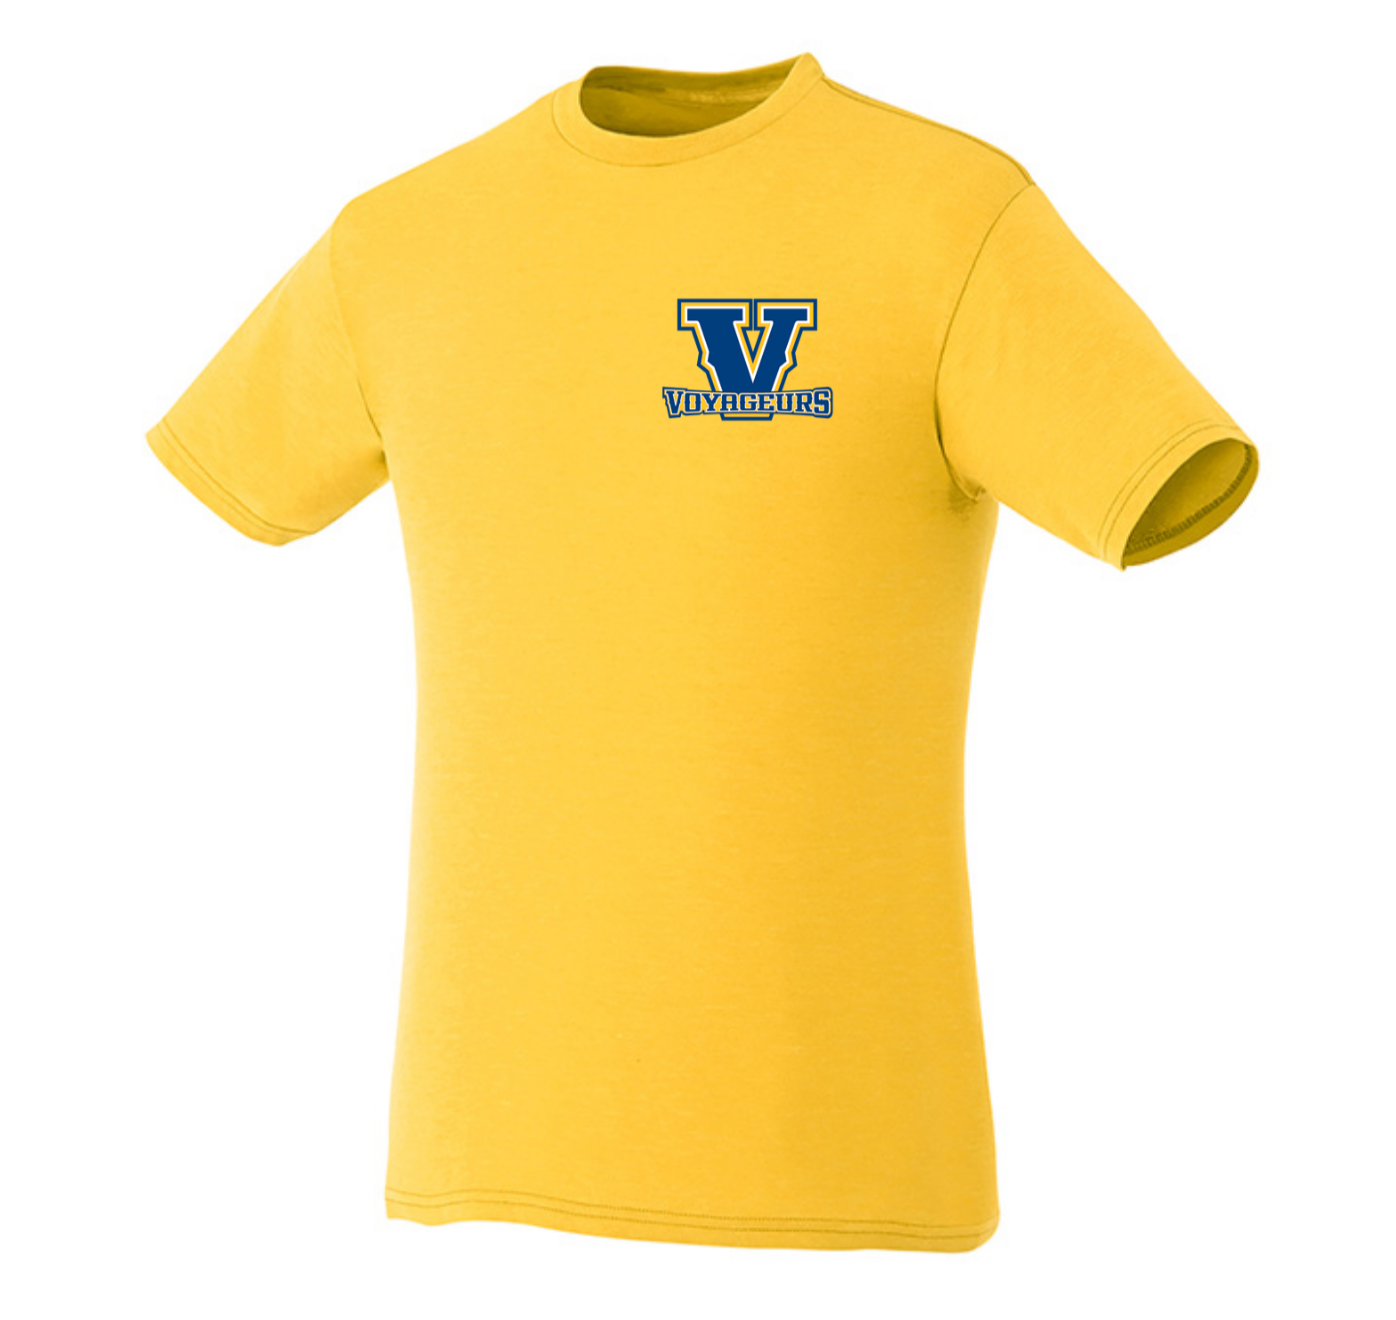 Voyageurs T-Shirt